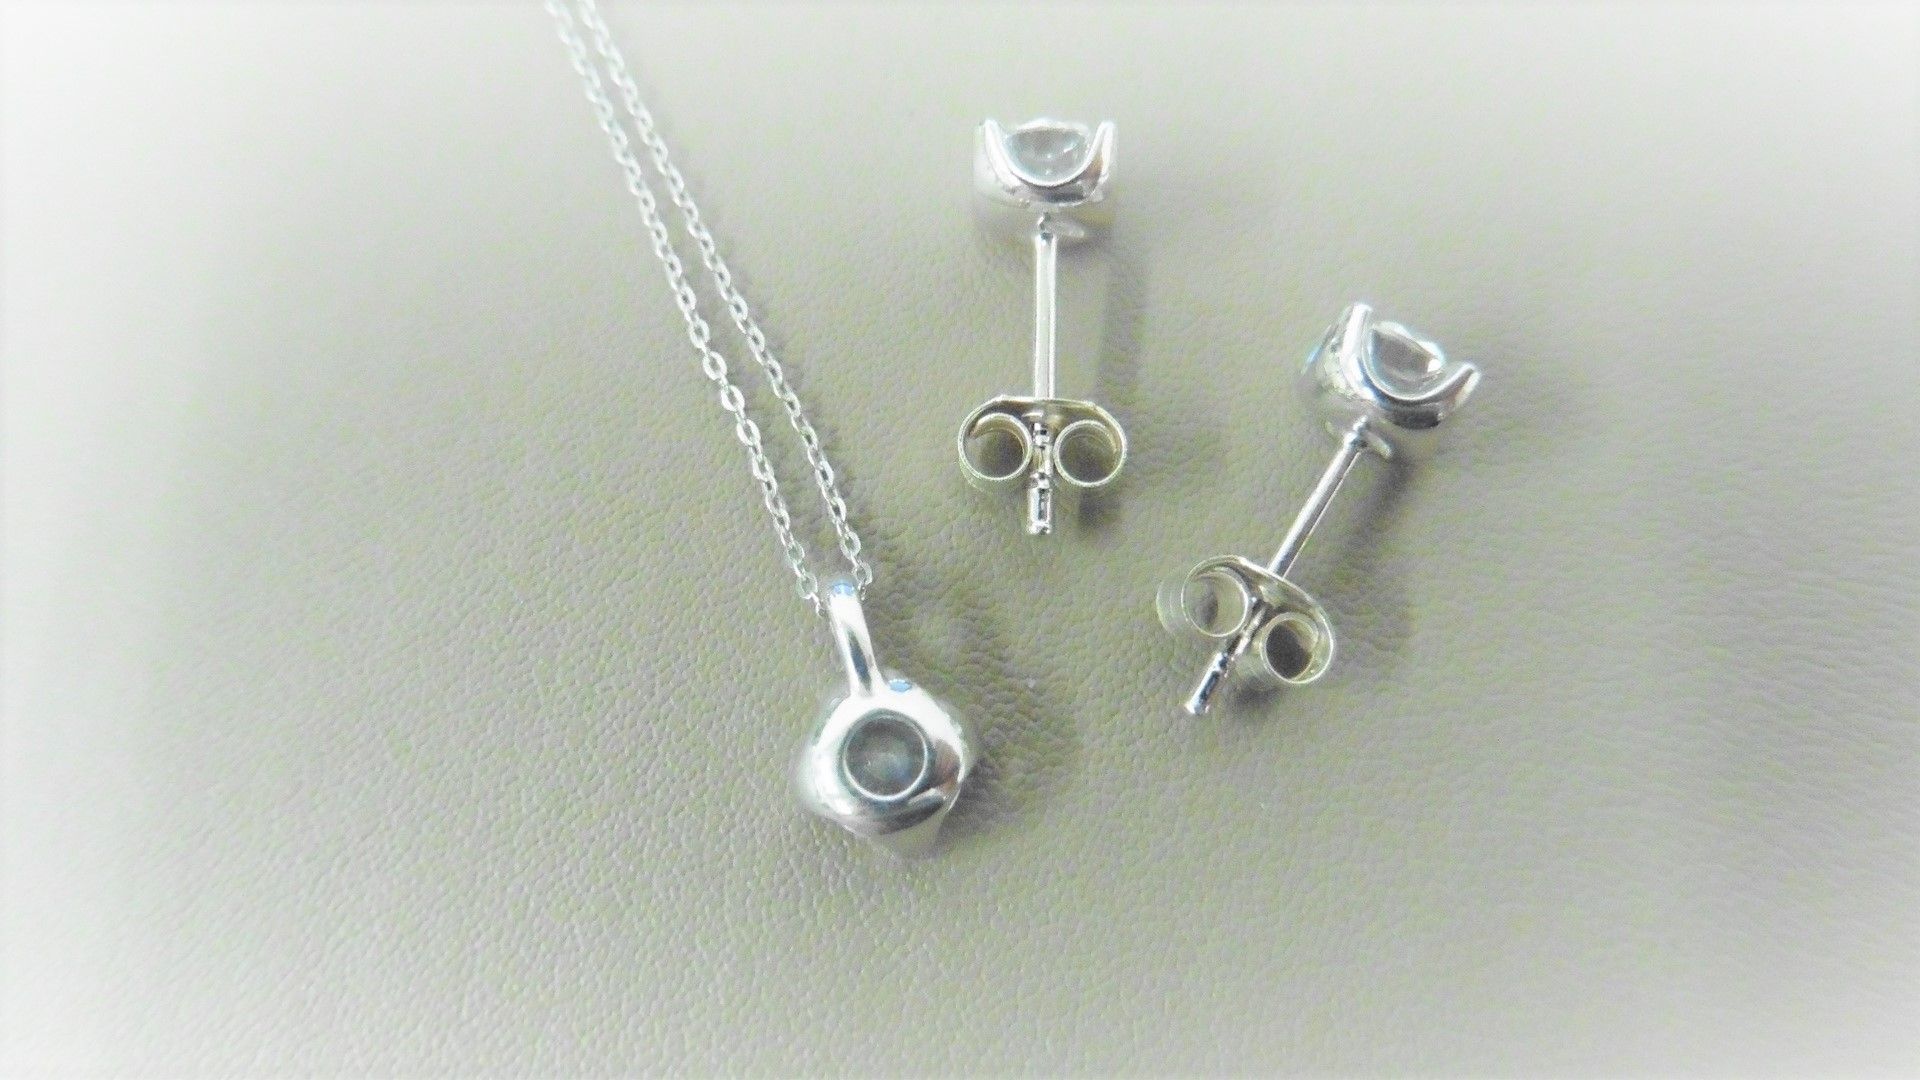 0.35ct / 0.70ct diamond pendant and earring set in platinum. Pendant - 0.35ct brilliant cut diamond, - Image 2 of 2